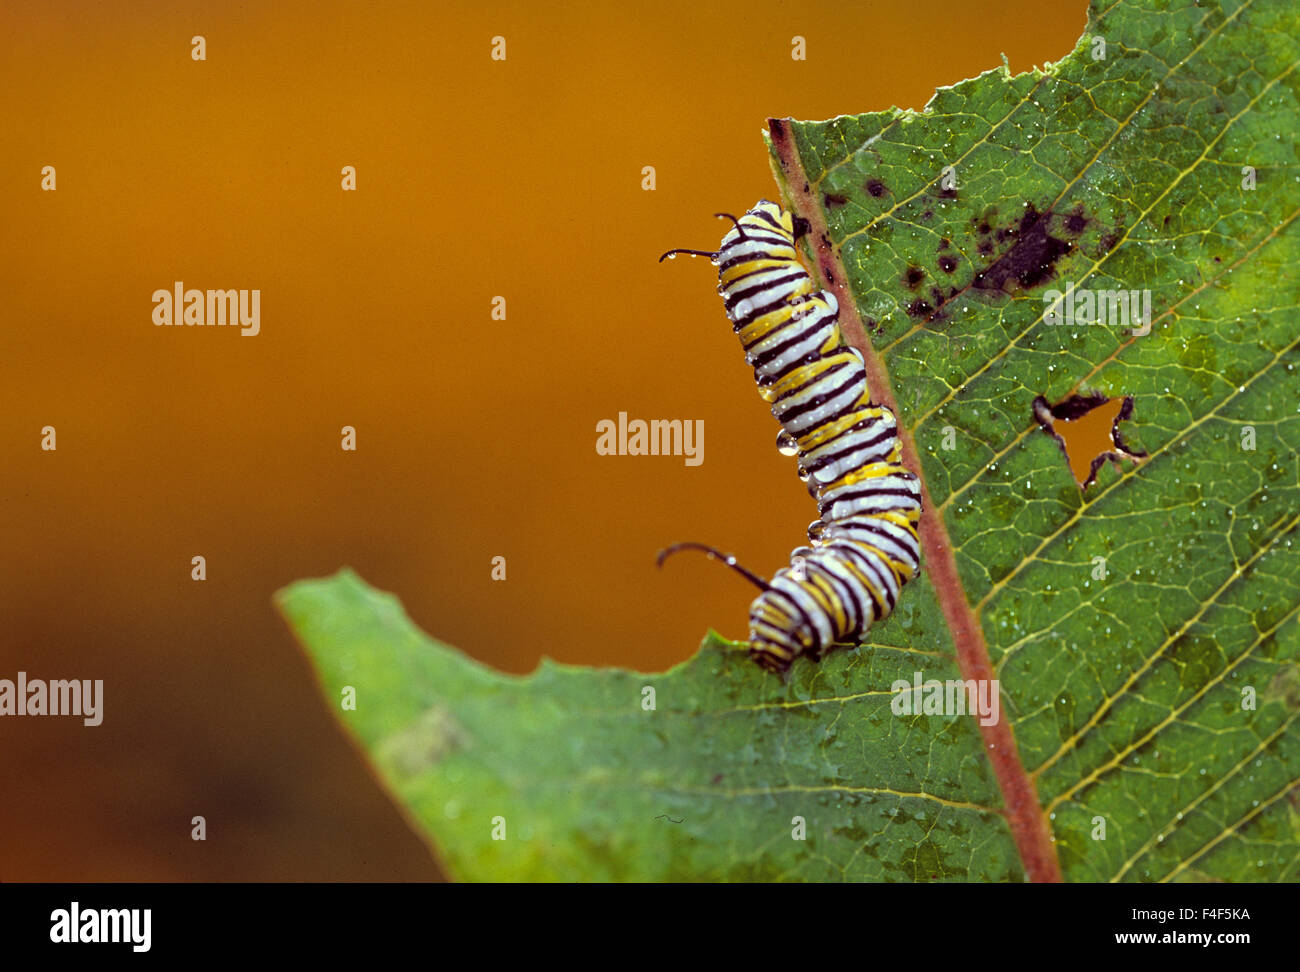 Stati Uniti d'America, Pennsylvania. La Monarch caterpillar mangiare foglia. Credito come: Nancy Rotenberg Jaynes / Galleria / DanitaDelimont.com Foto Stock